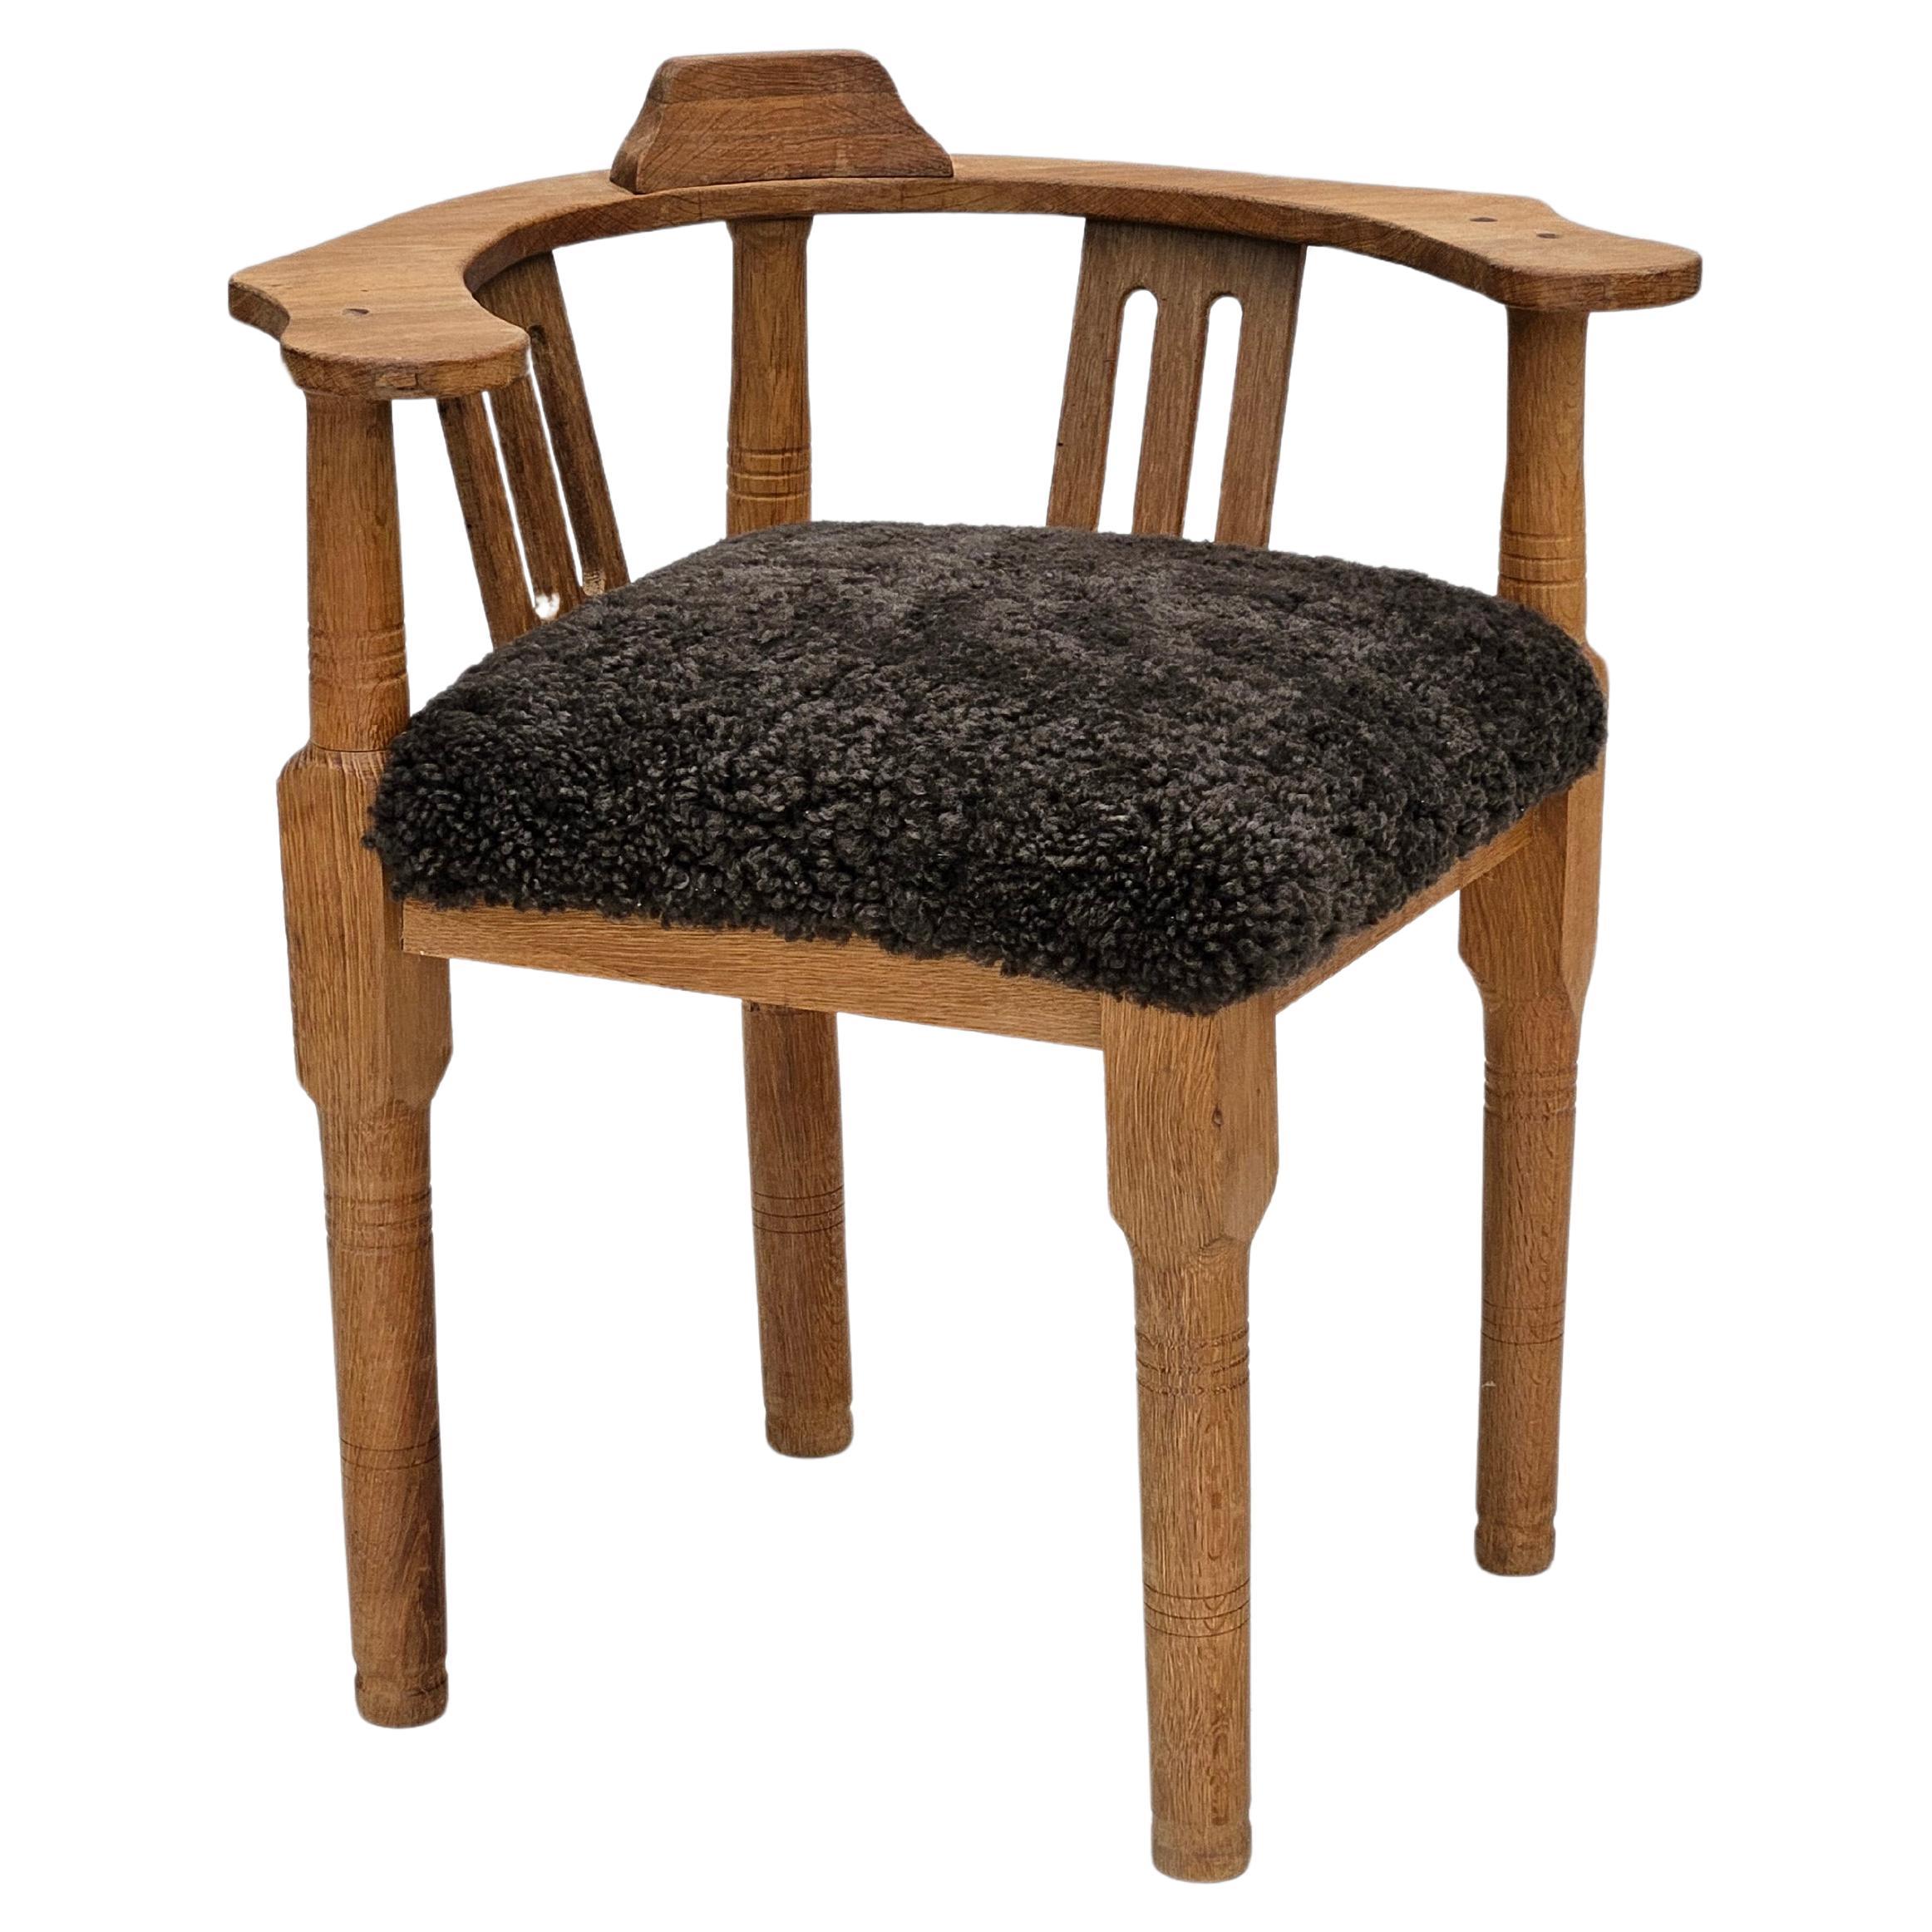 Années 1950, design danois, fauteuil retapissé, peau de mouton de la Nouvelle-Zélande, bois de chêne.